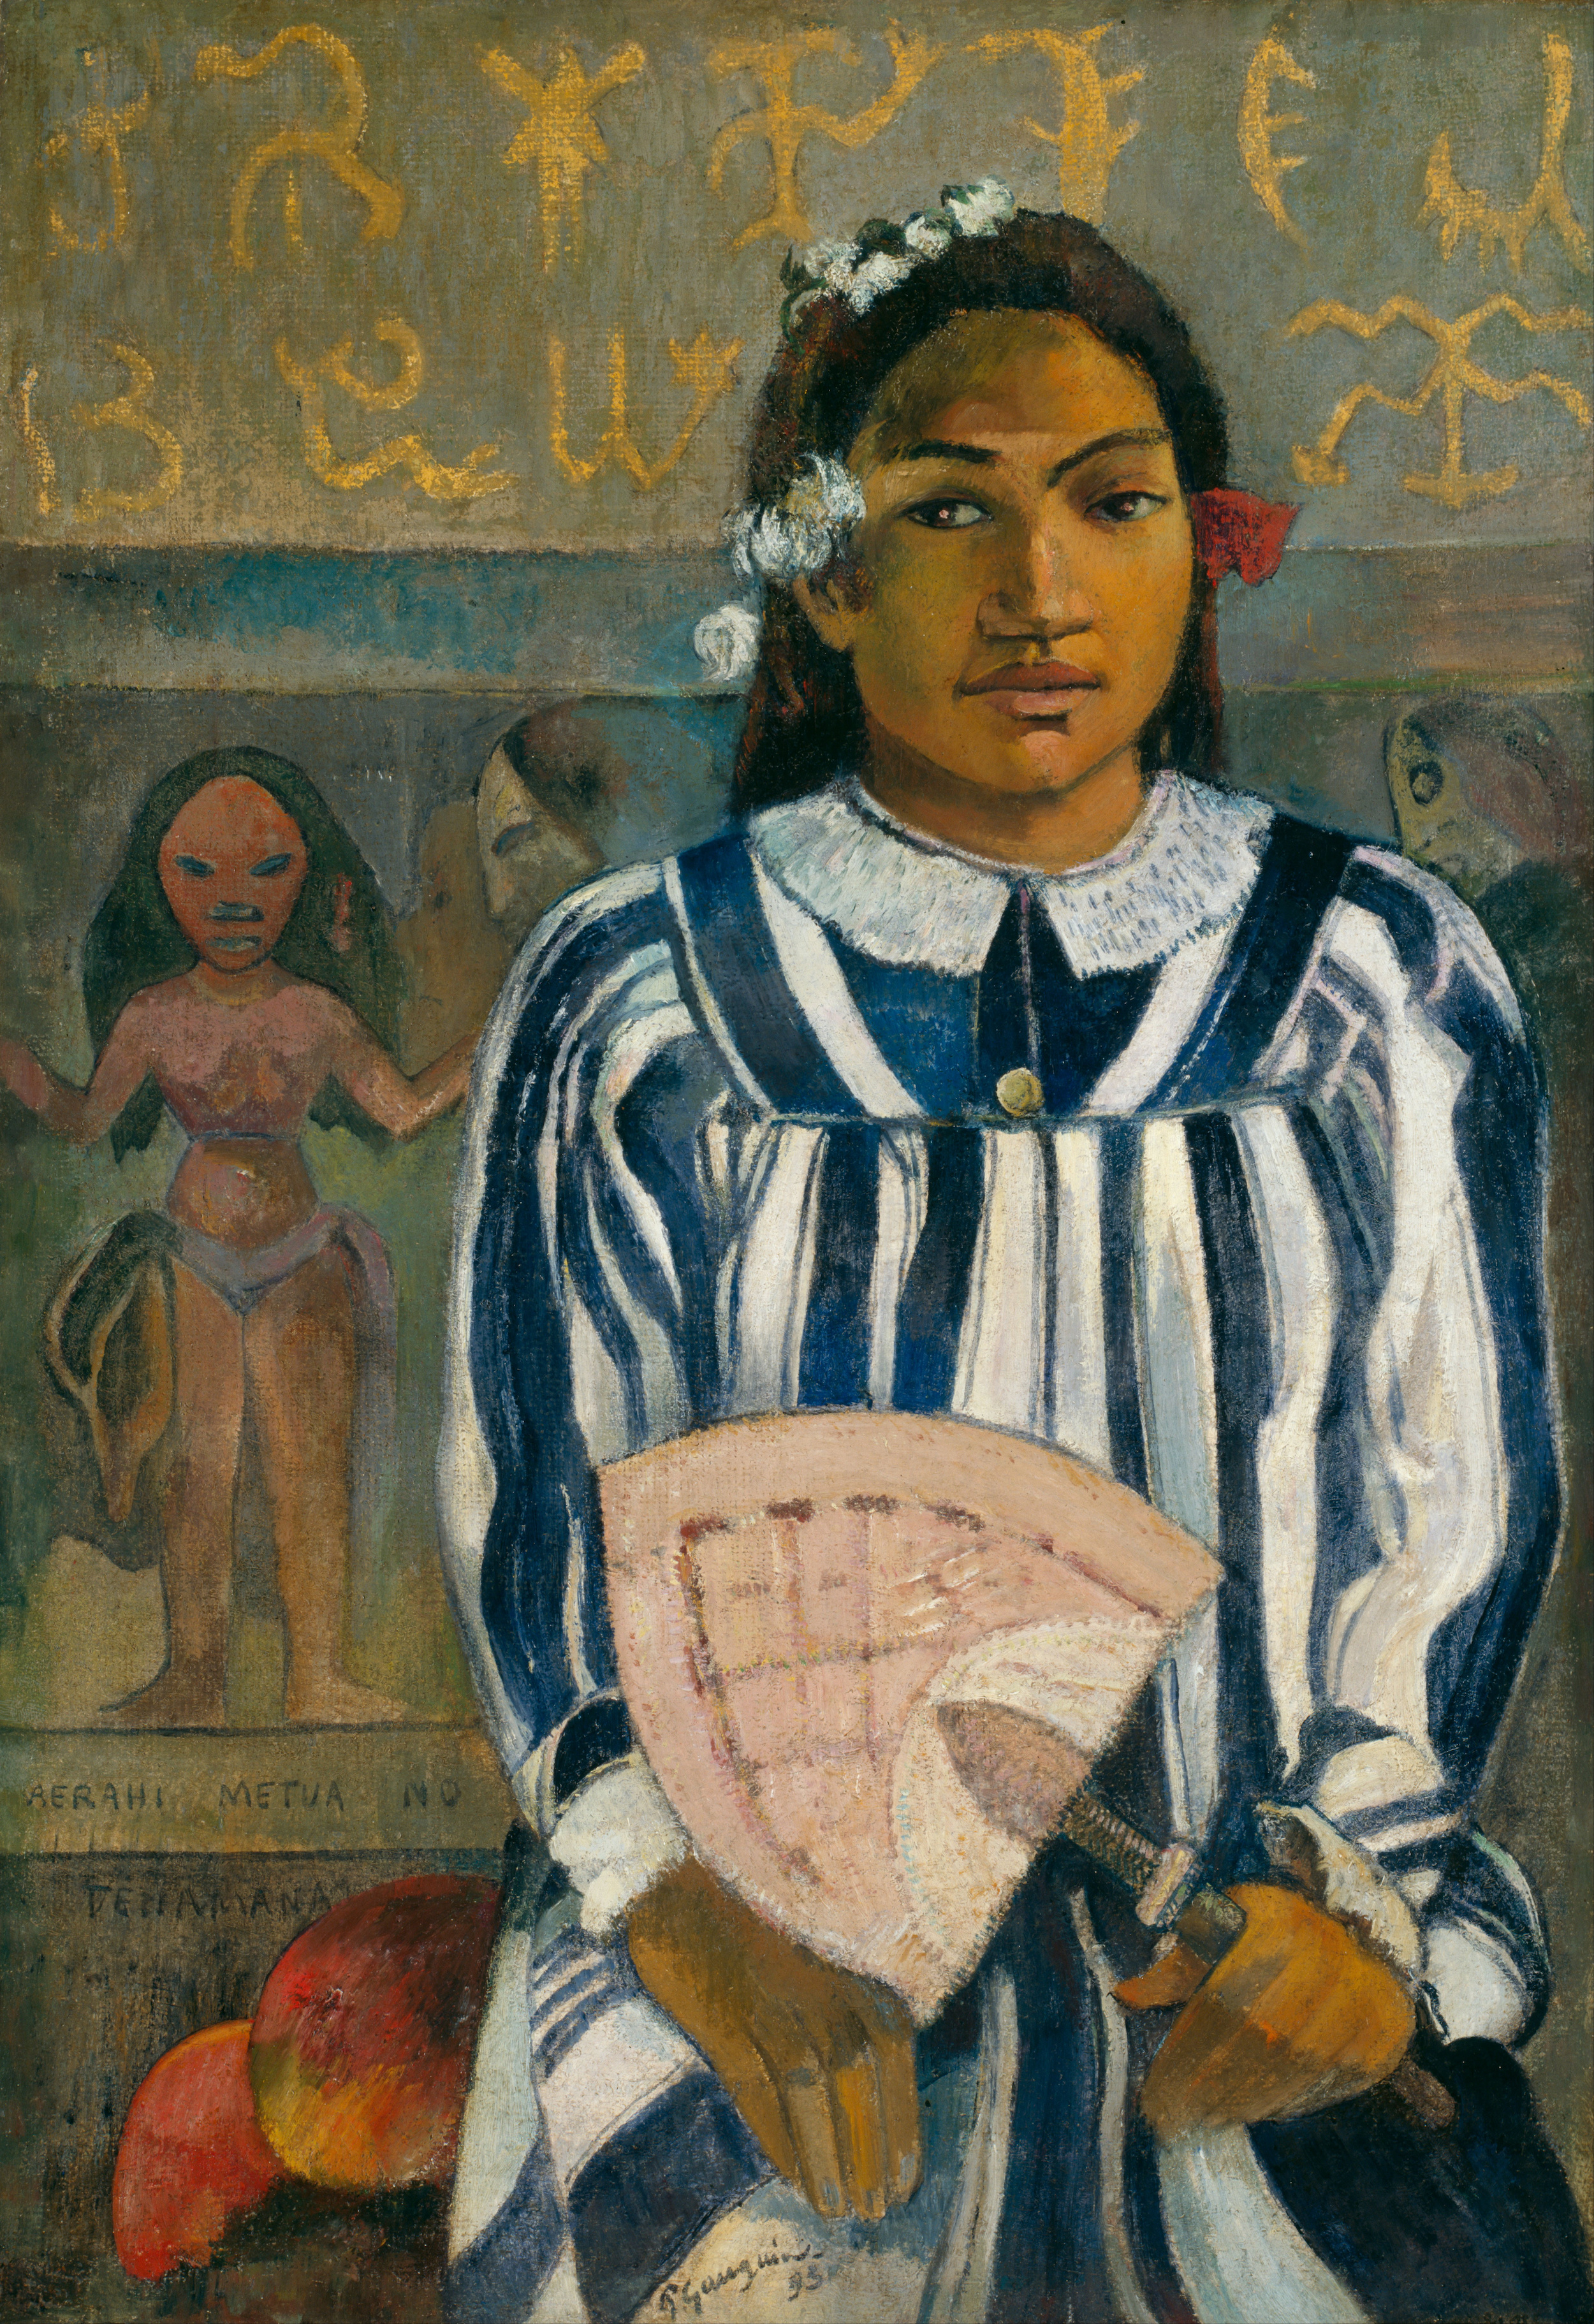 Merahi metua no Tehamana by Paul Gauguin - 1893 - 76.3 × 54.3 cm 